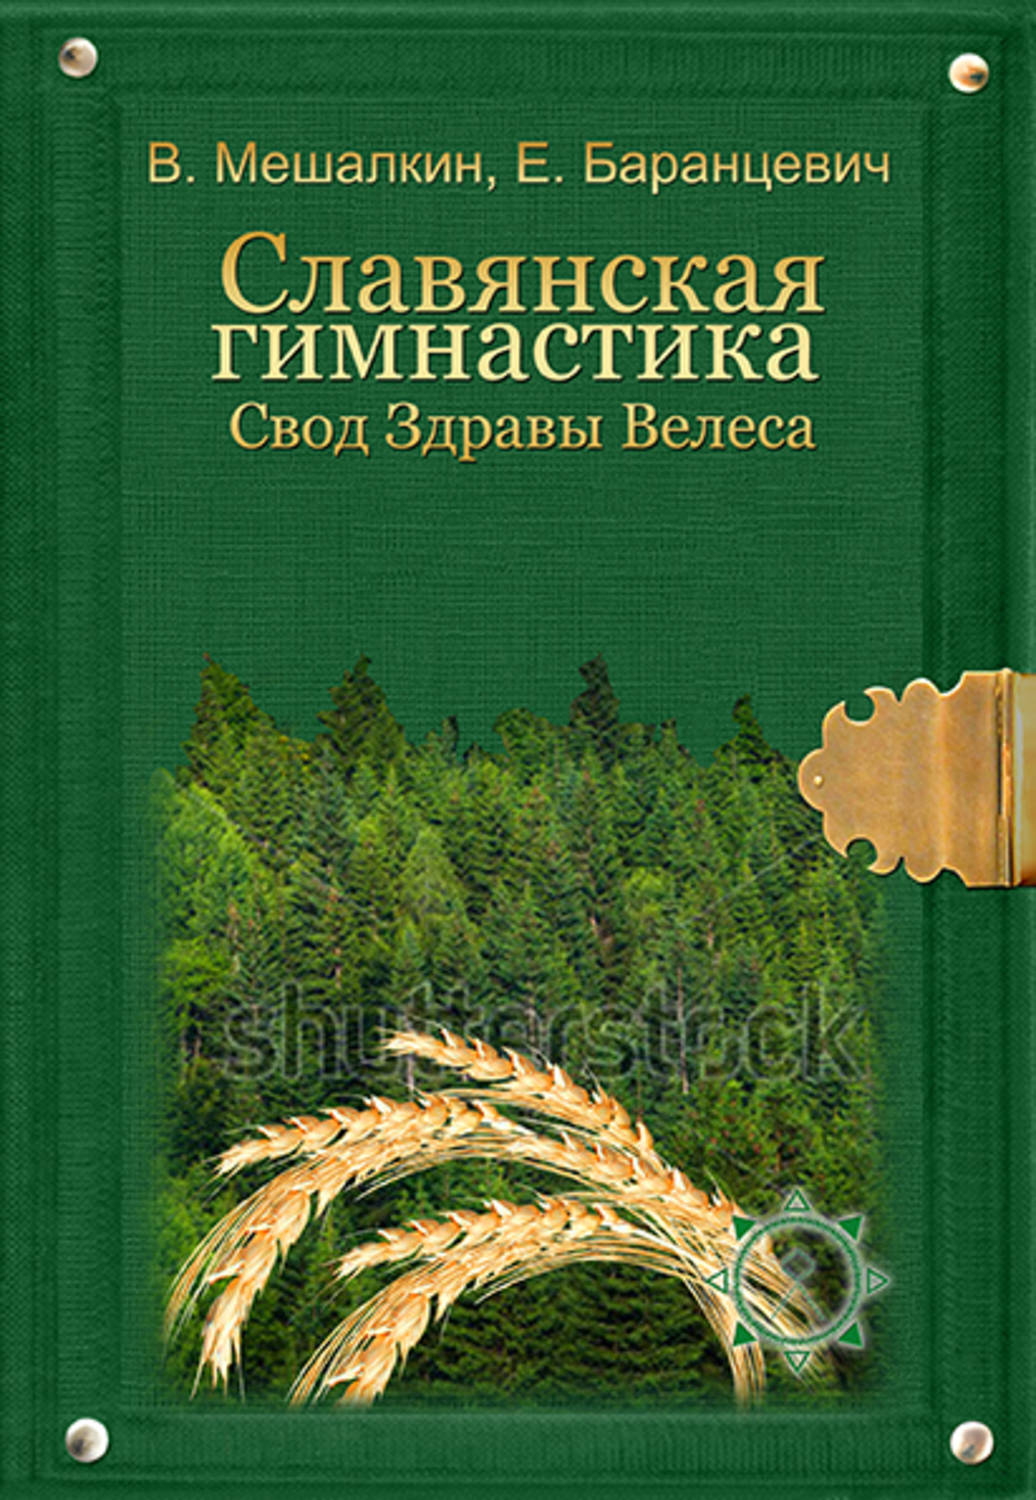 Книга славянская здрава скачать